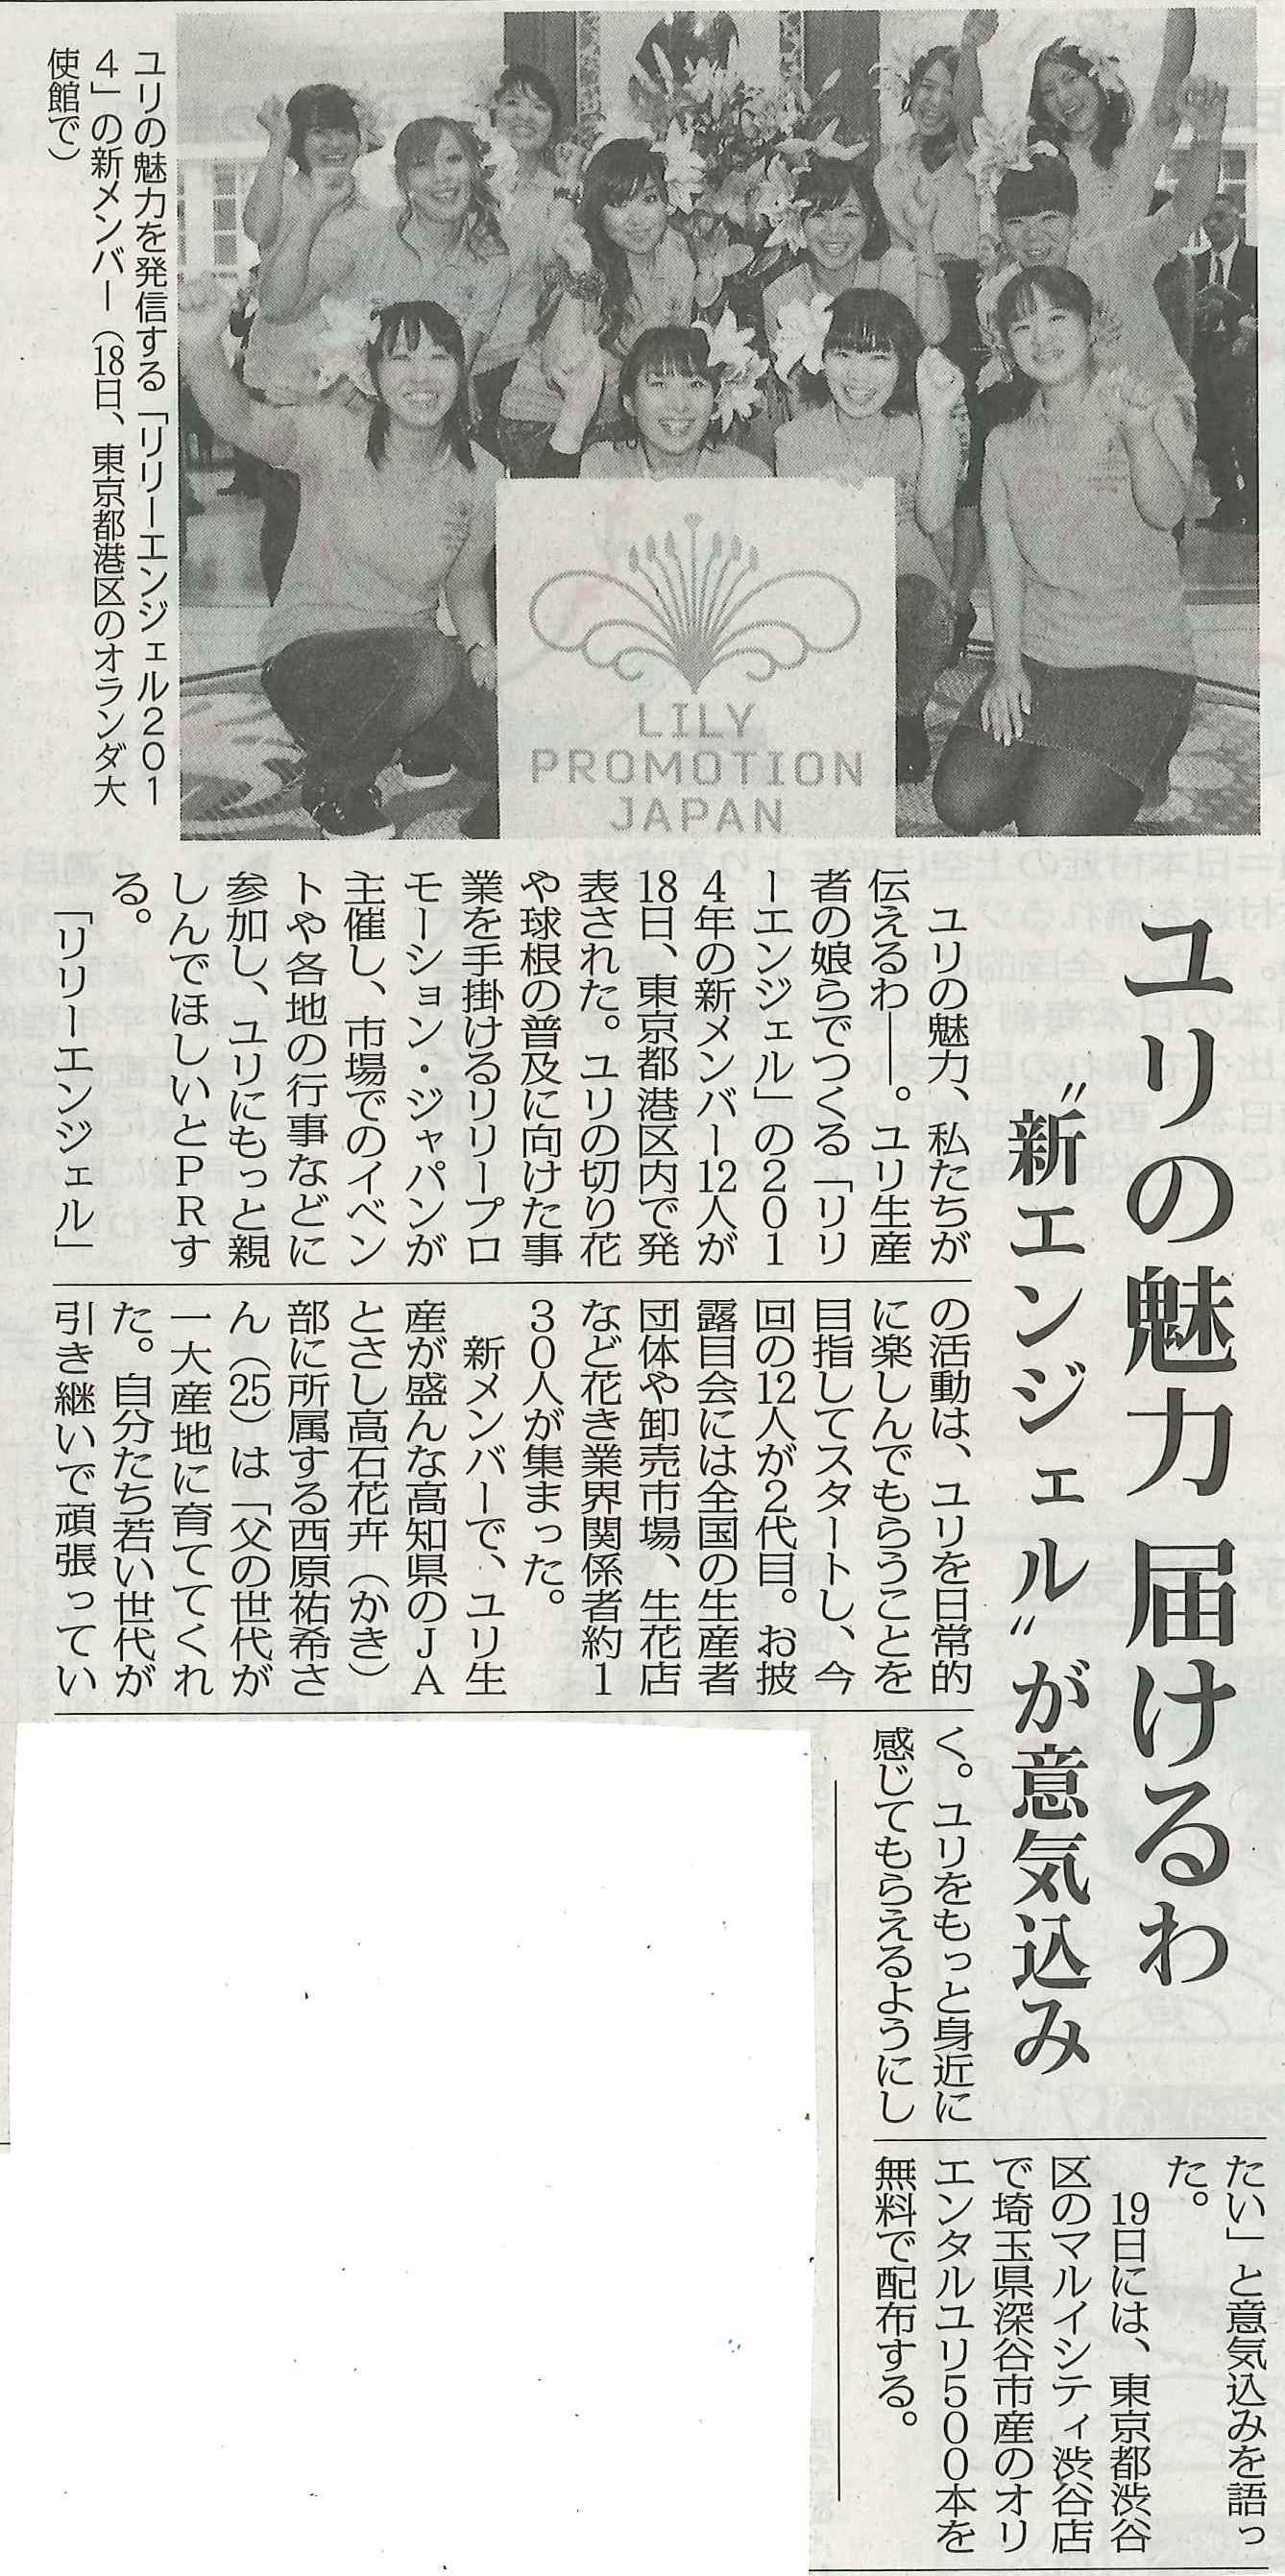 リリーエンジェルの記事が日本農業新聞に掲載されました（2013/10/22）